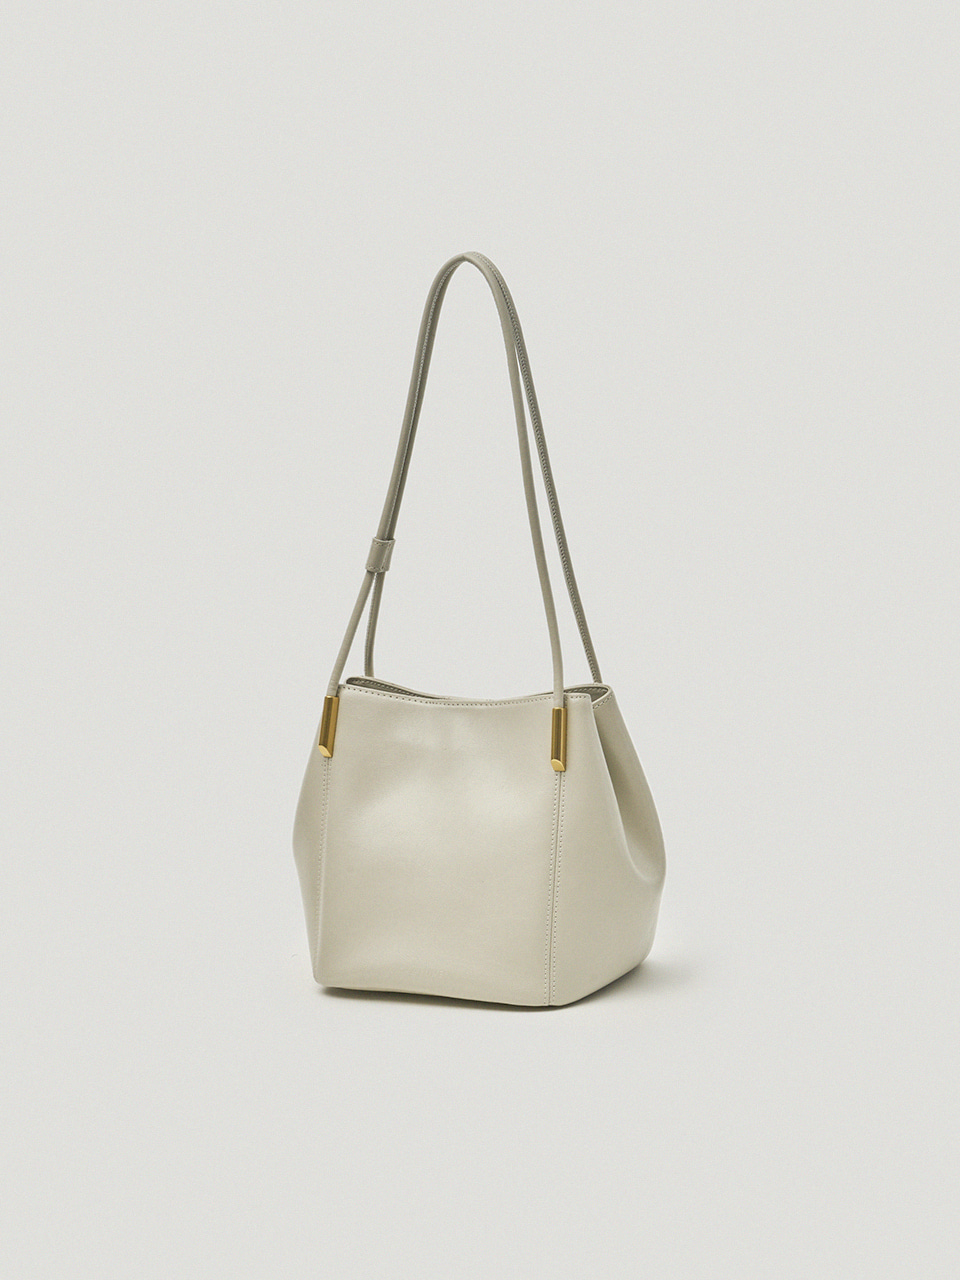 Marron Bag / Misty White